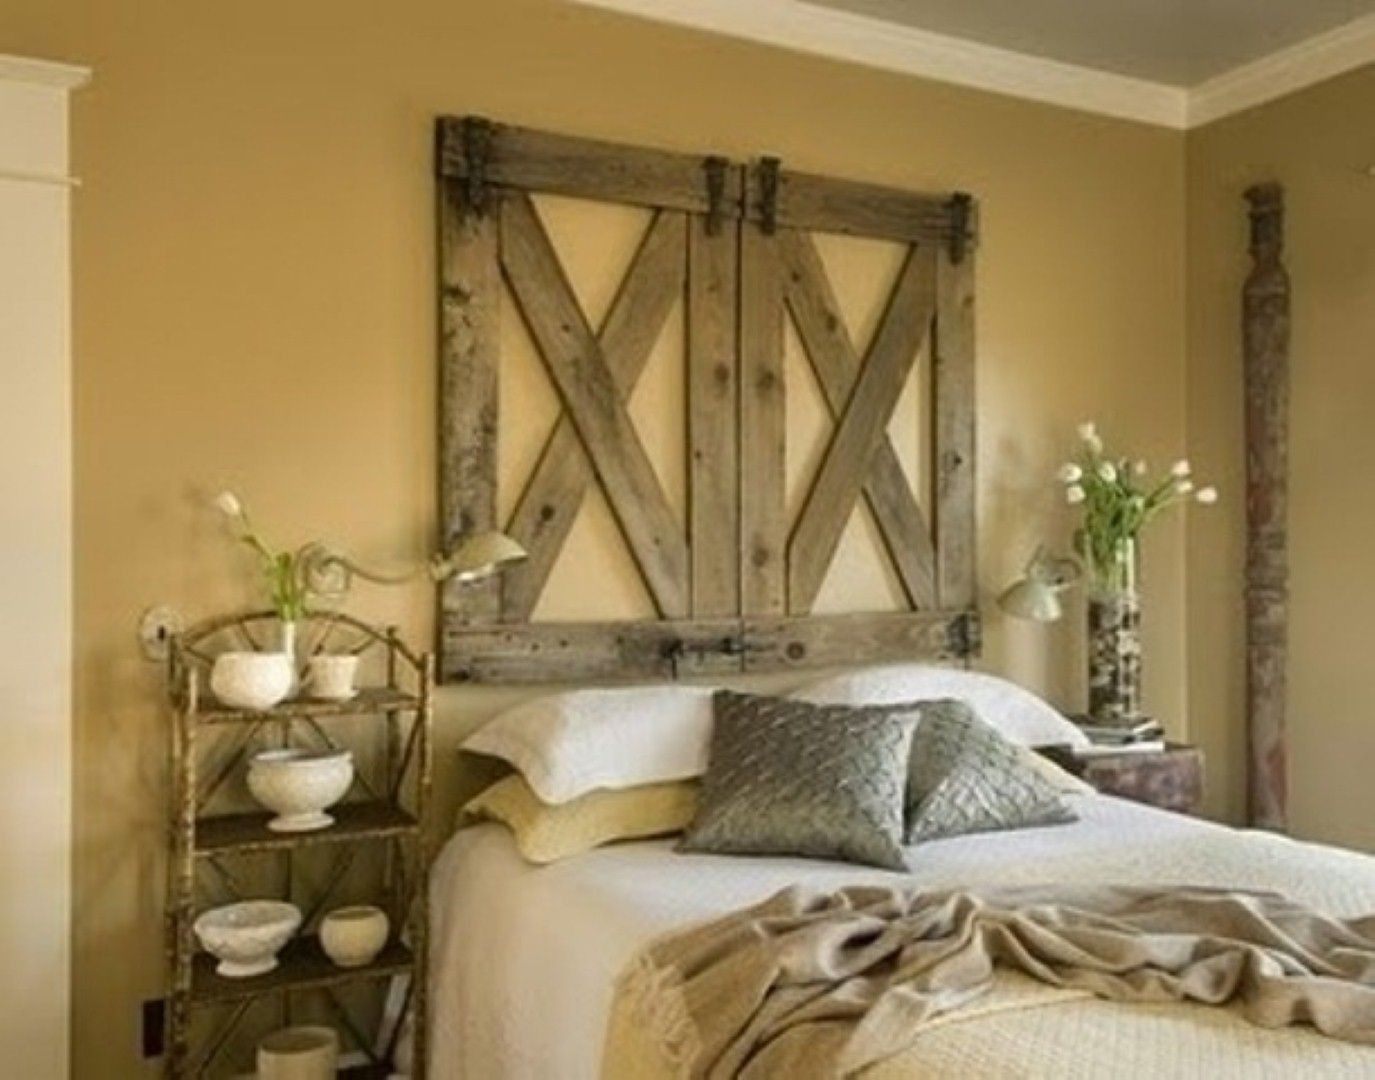 Rustic Bedroom Ideas Diy
 diy rustic bedroom ideas diy rustic decor